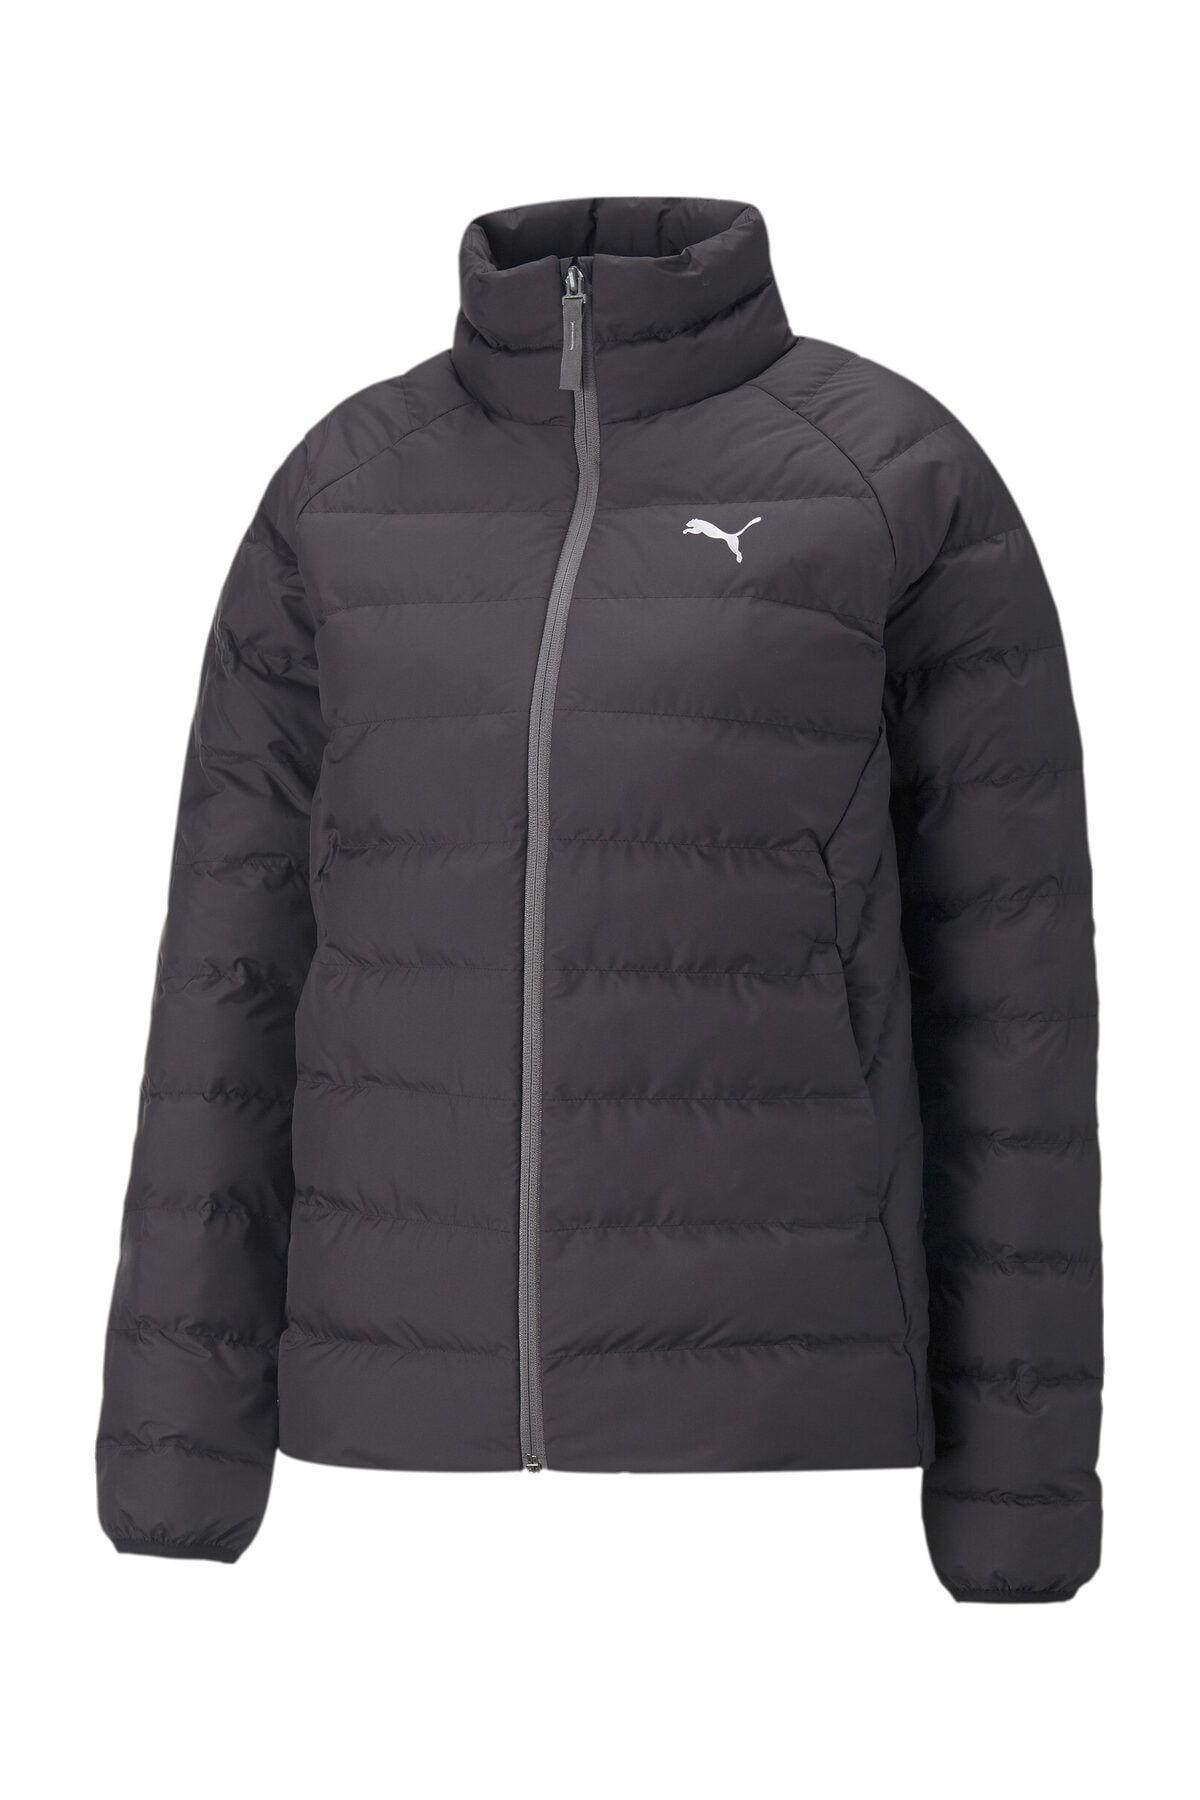 Sports Puma - Jacket Coat-Jacket Black - Trendyol Polyball Active